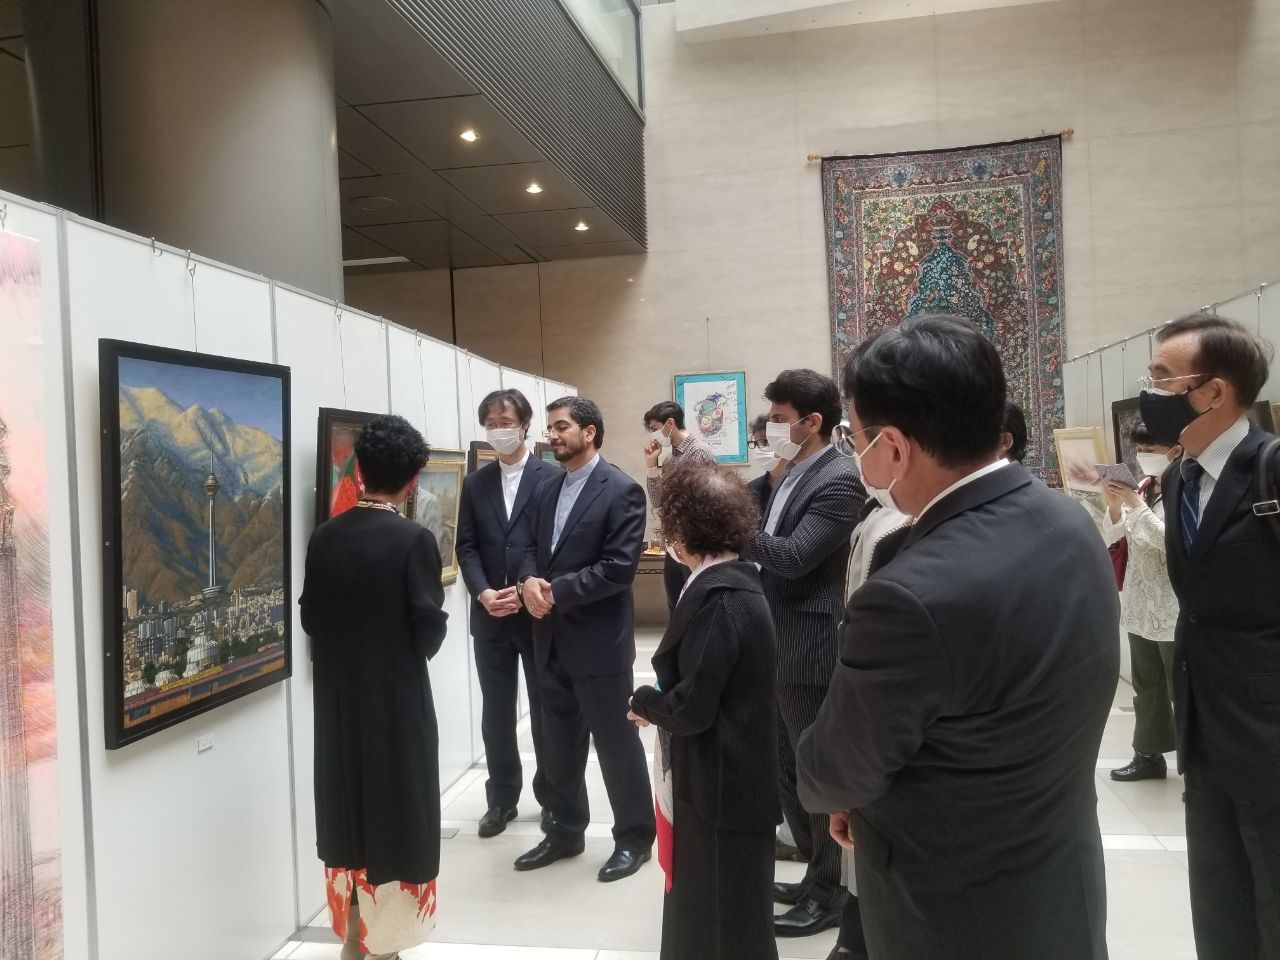 نمایشگاه نقاشی "تبادلات فرهنگی ایران و ژاپن" آغاز شد